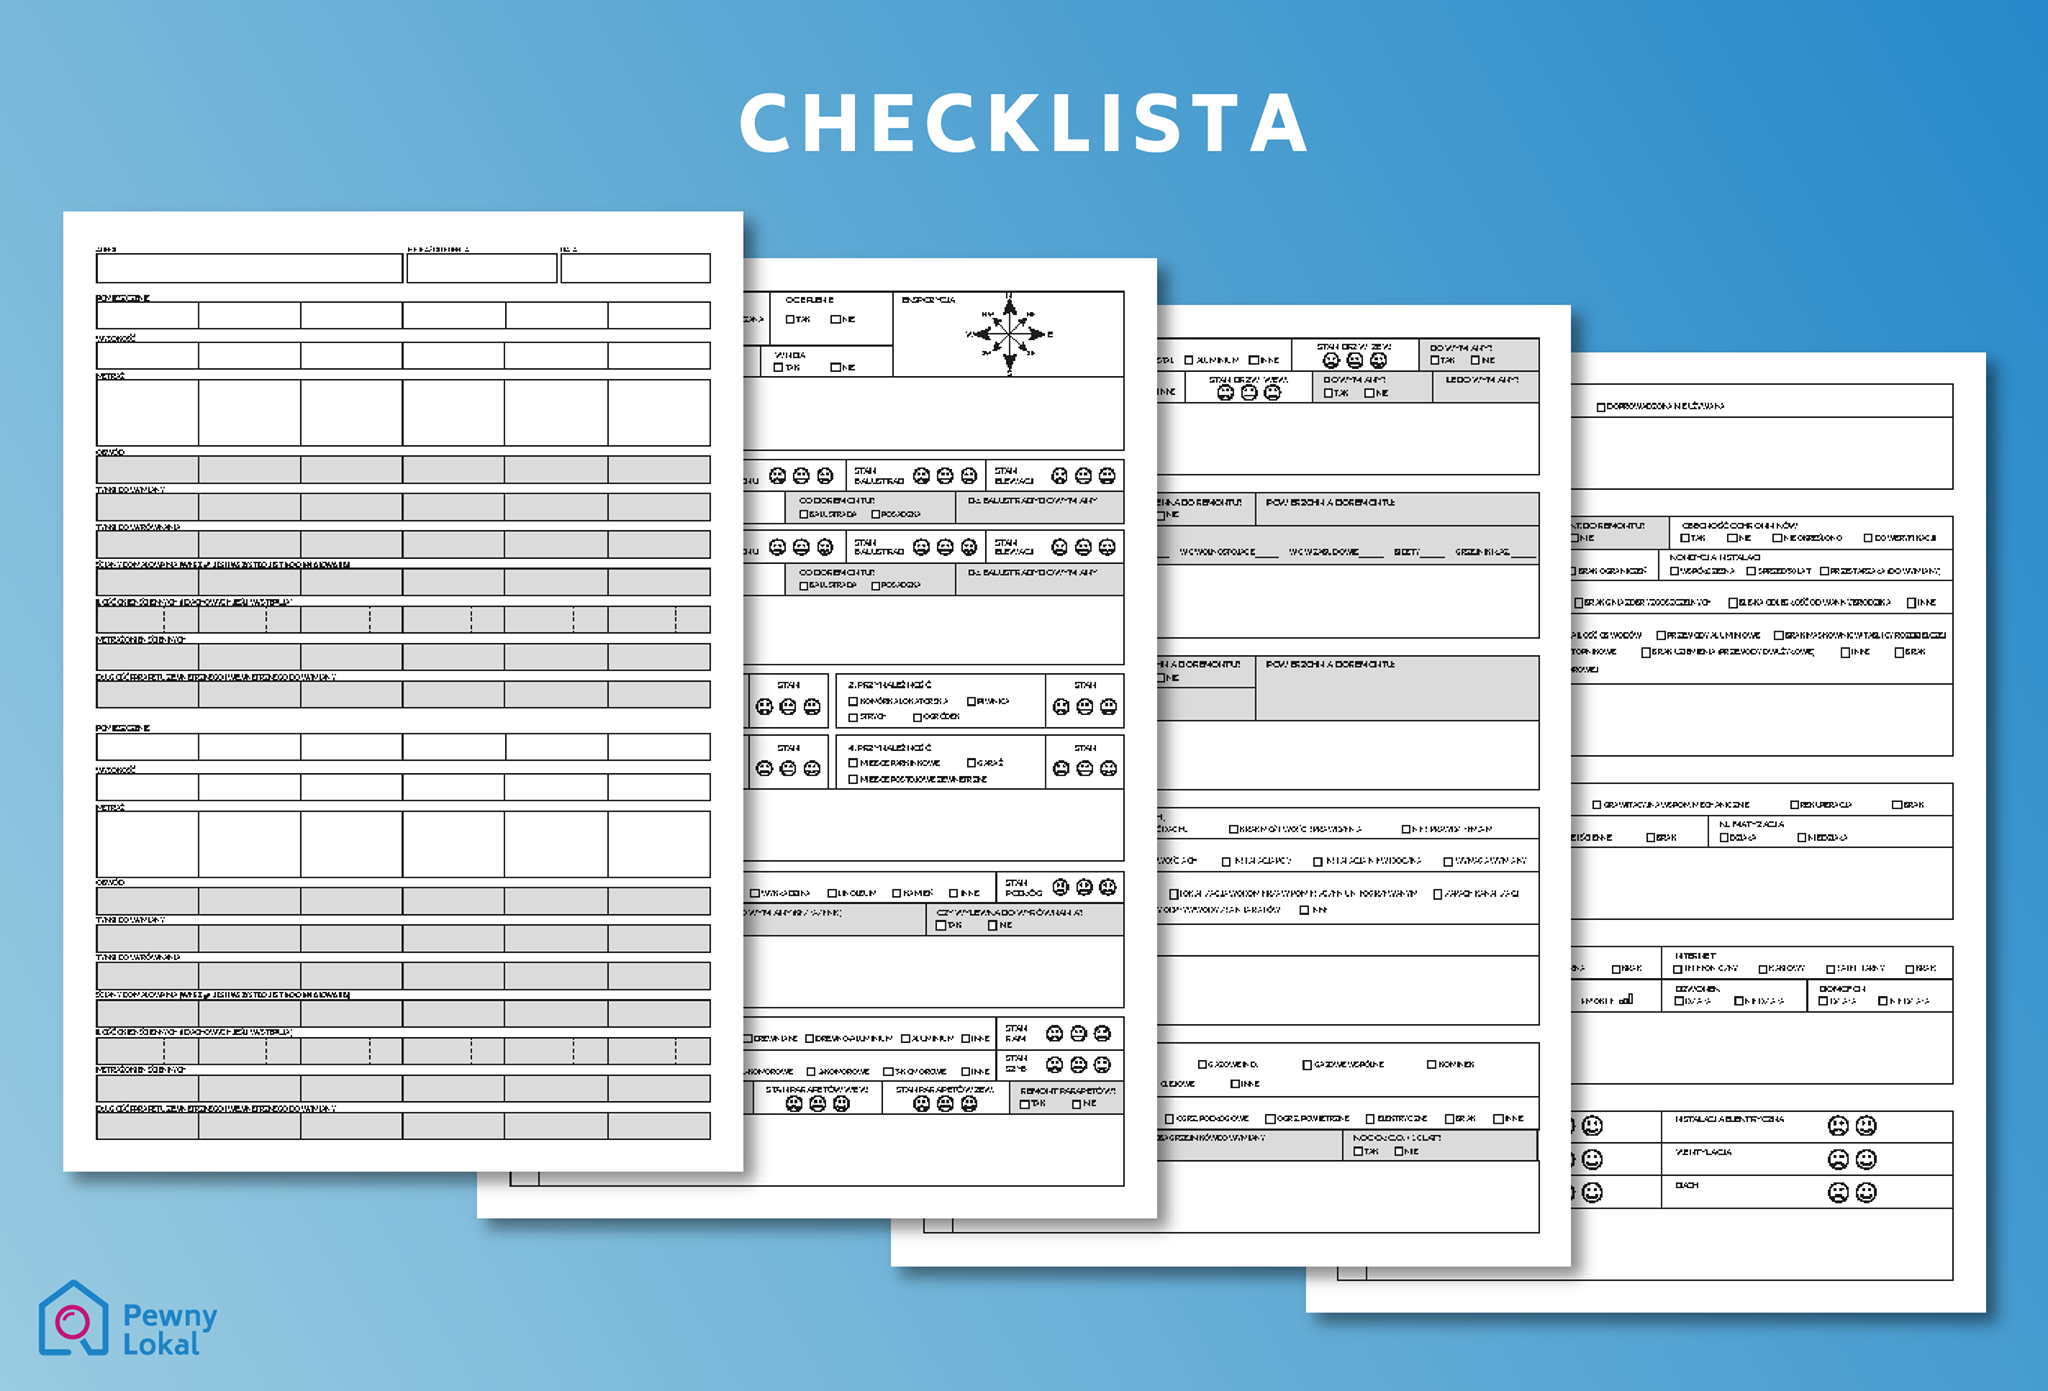 Przykładowe checklisty dotyczące odbioru mieszkania, z których korzystają nasi inżynierowie.